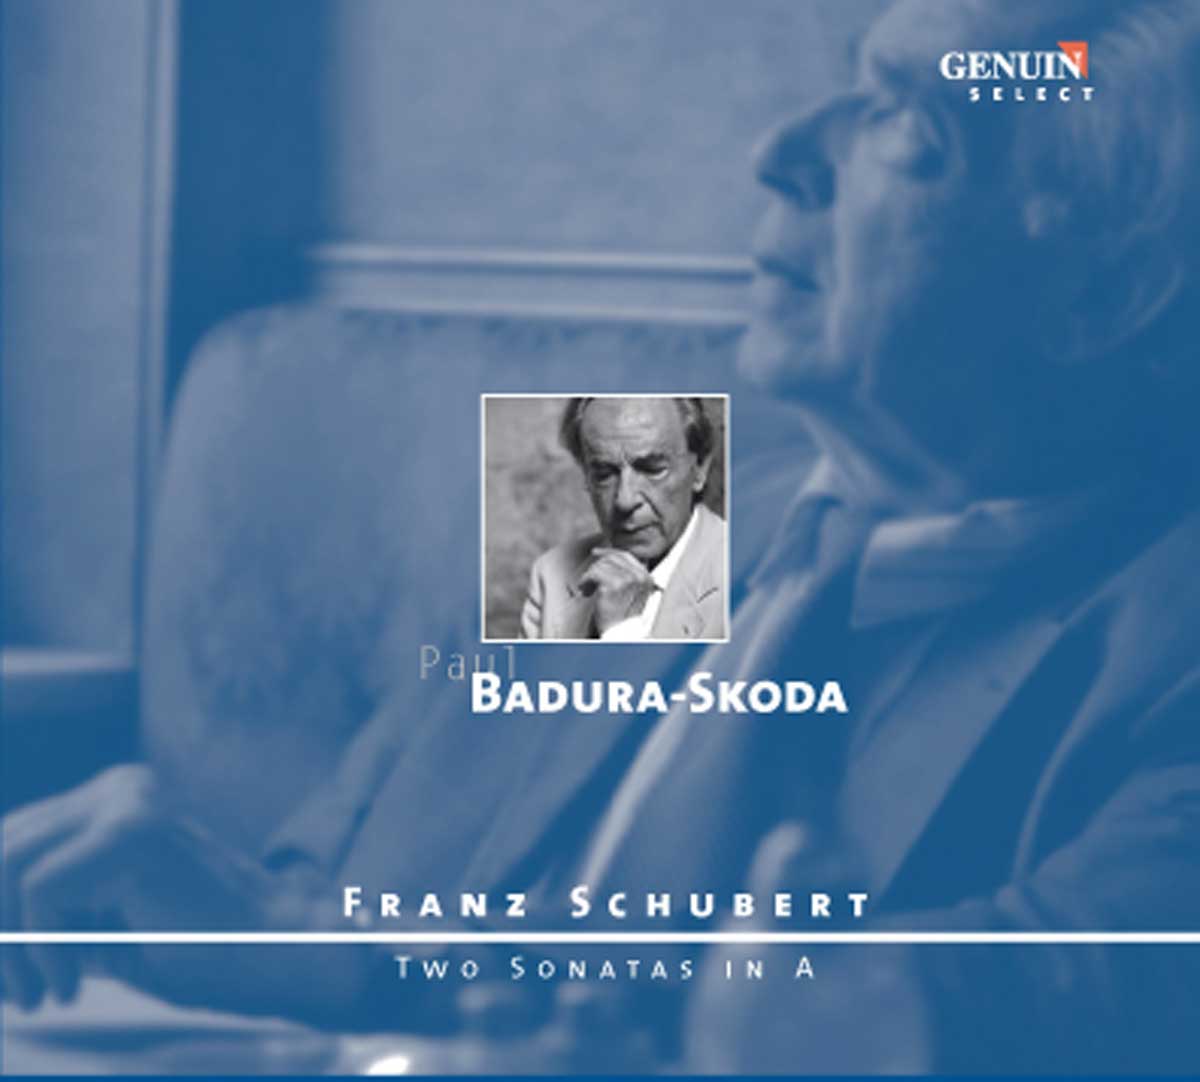 CD album cover 'Franz Schubert' (GEN 88125) with Paul Badura-Skoda